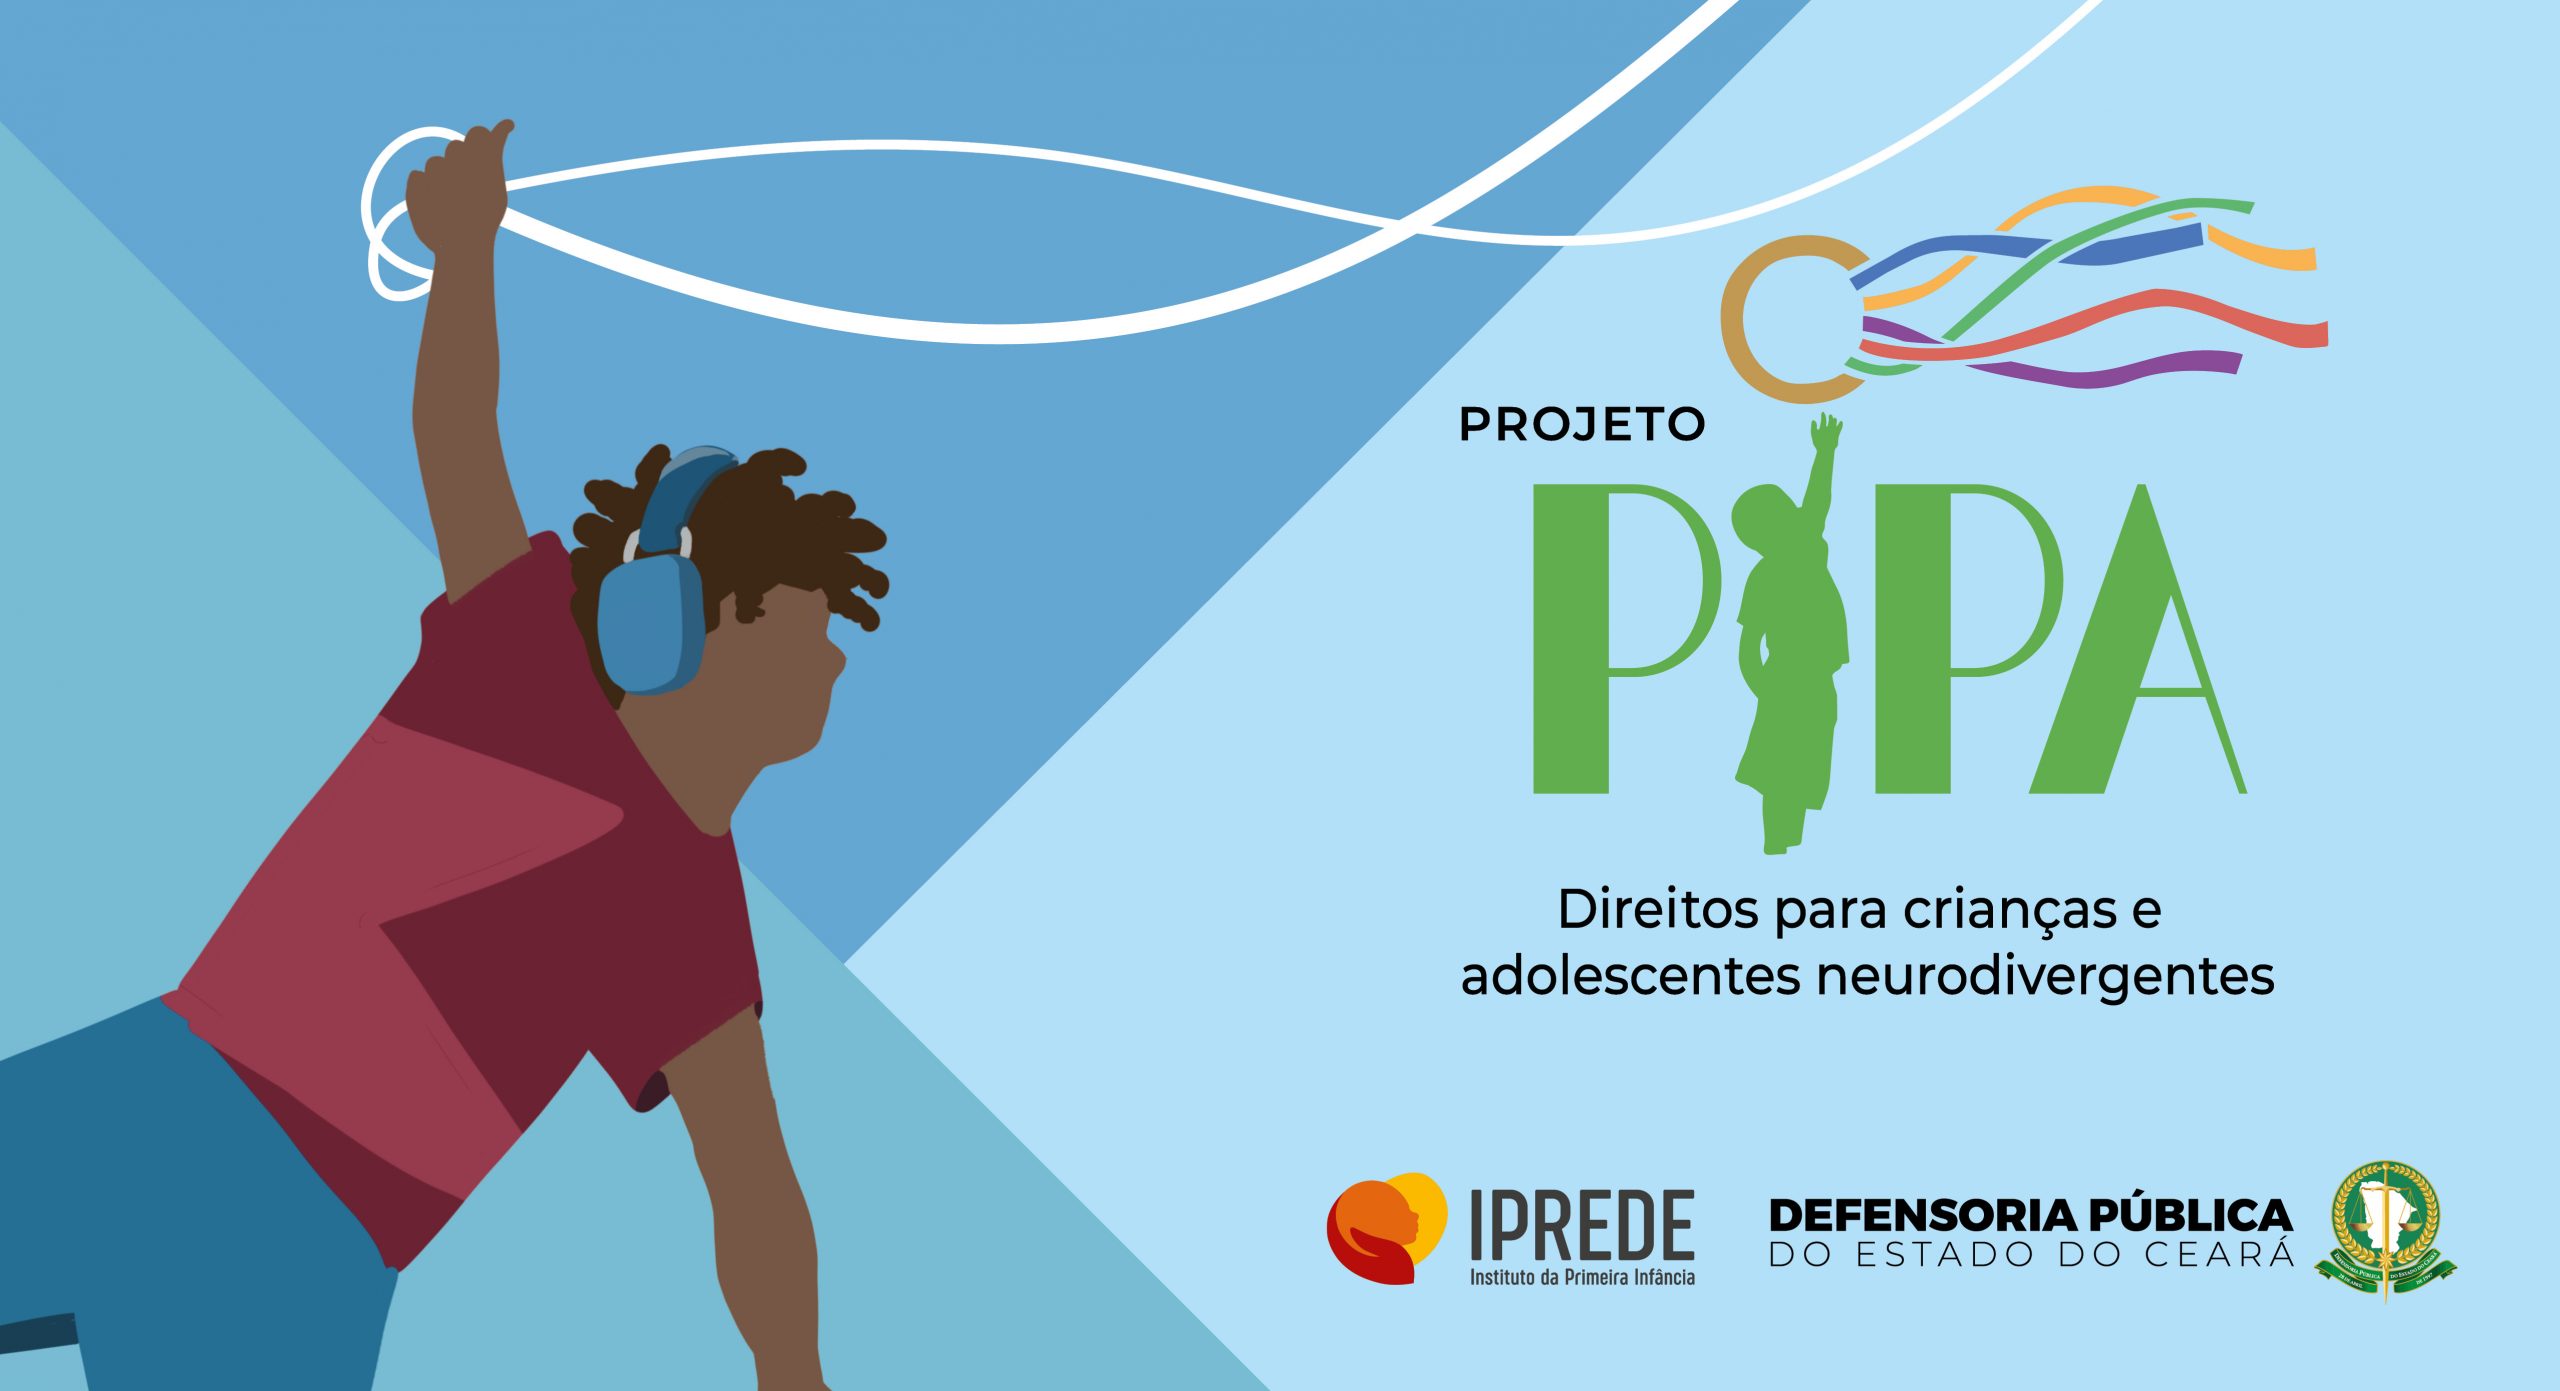 Projeto Pipa: Defensoria lança programa para atender crianças e jovens com neurodivergência, no Iprede